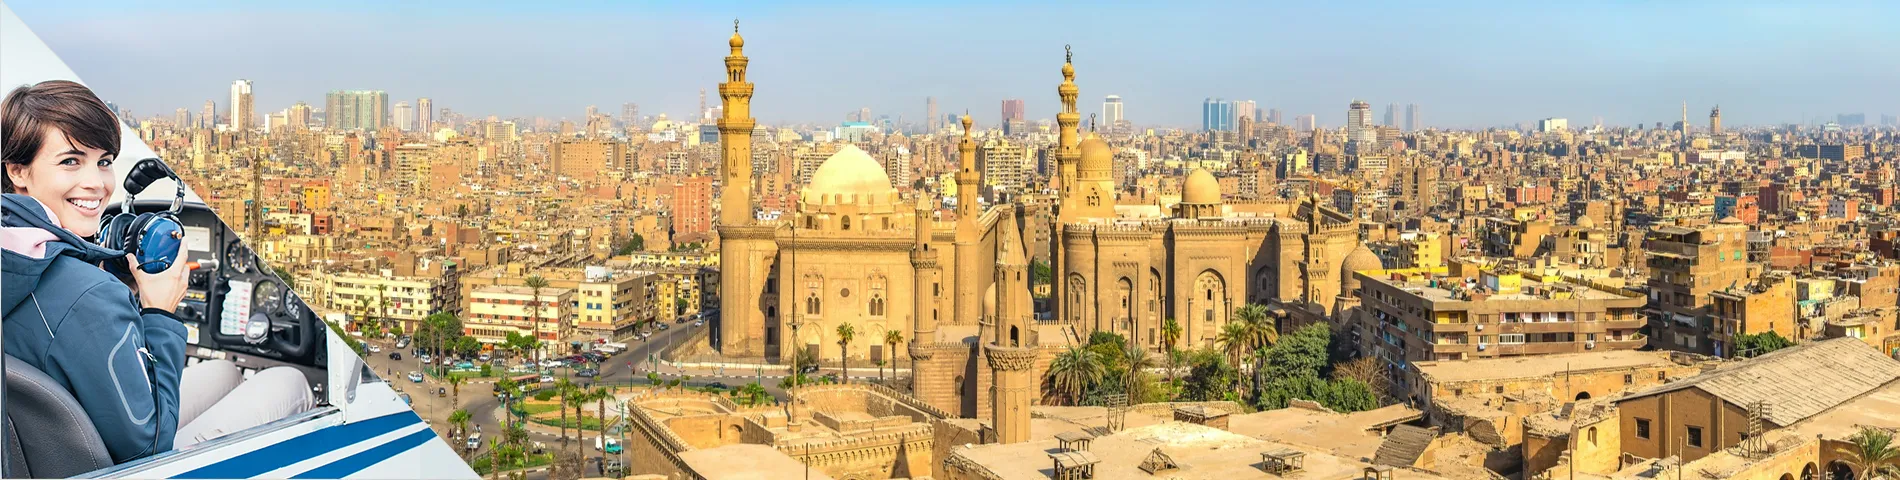 Káhira - Arabčina pre letectvo